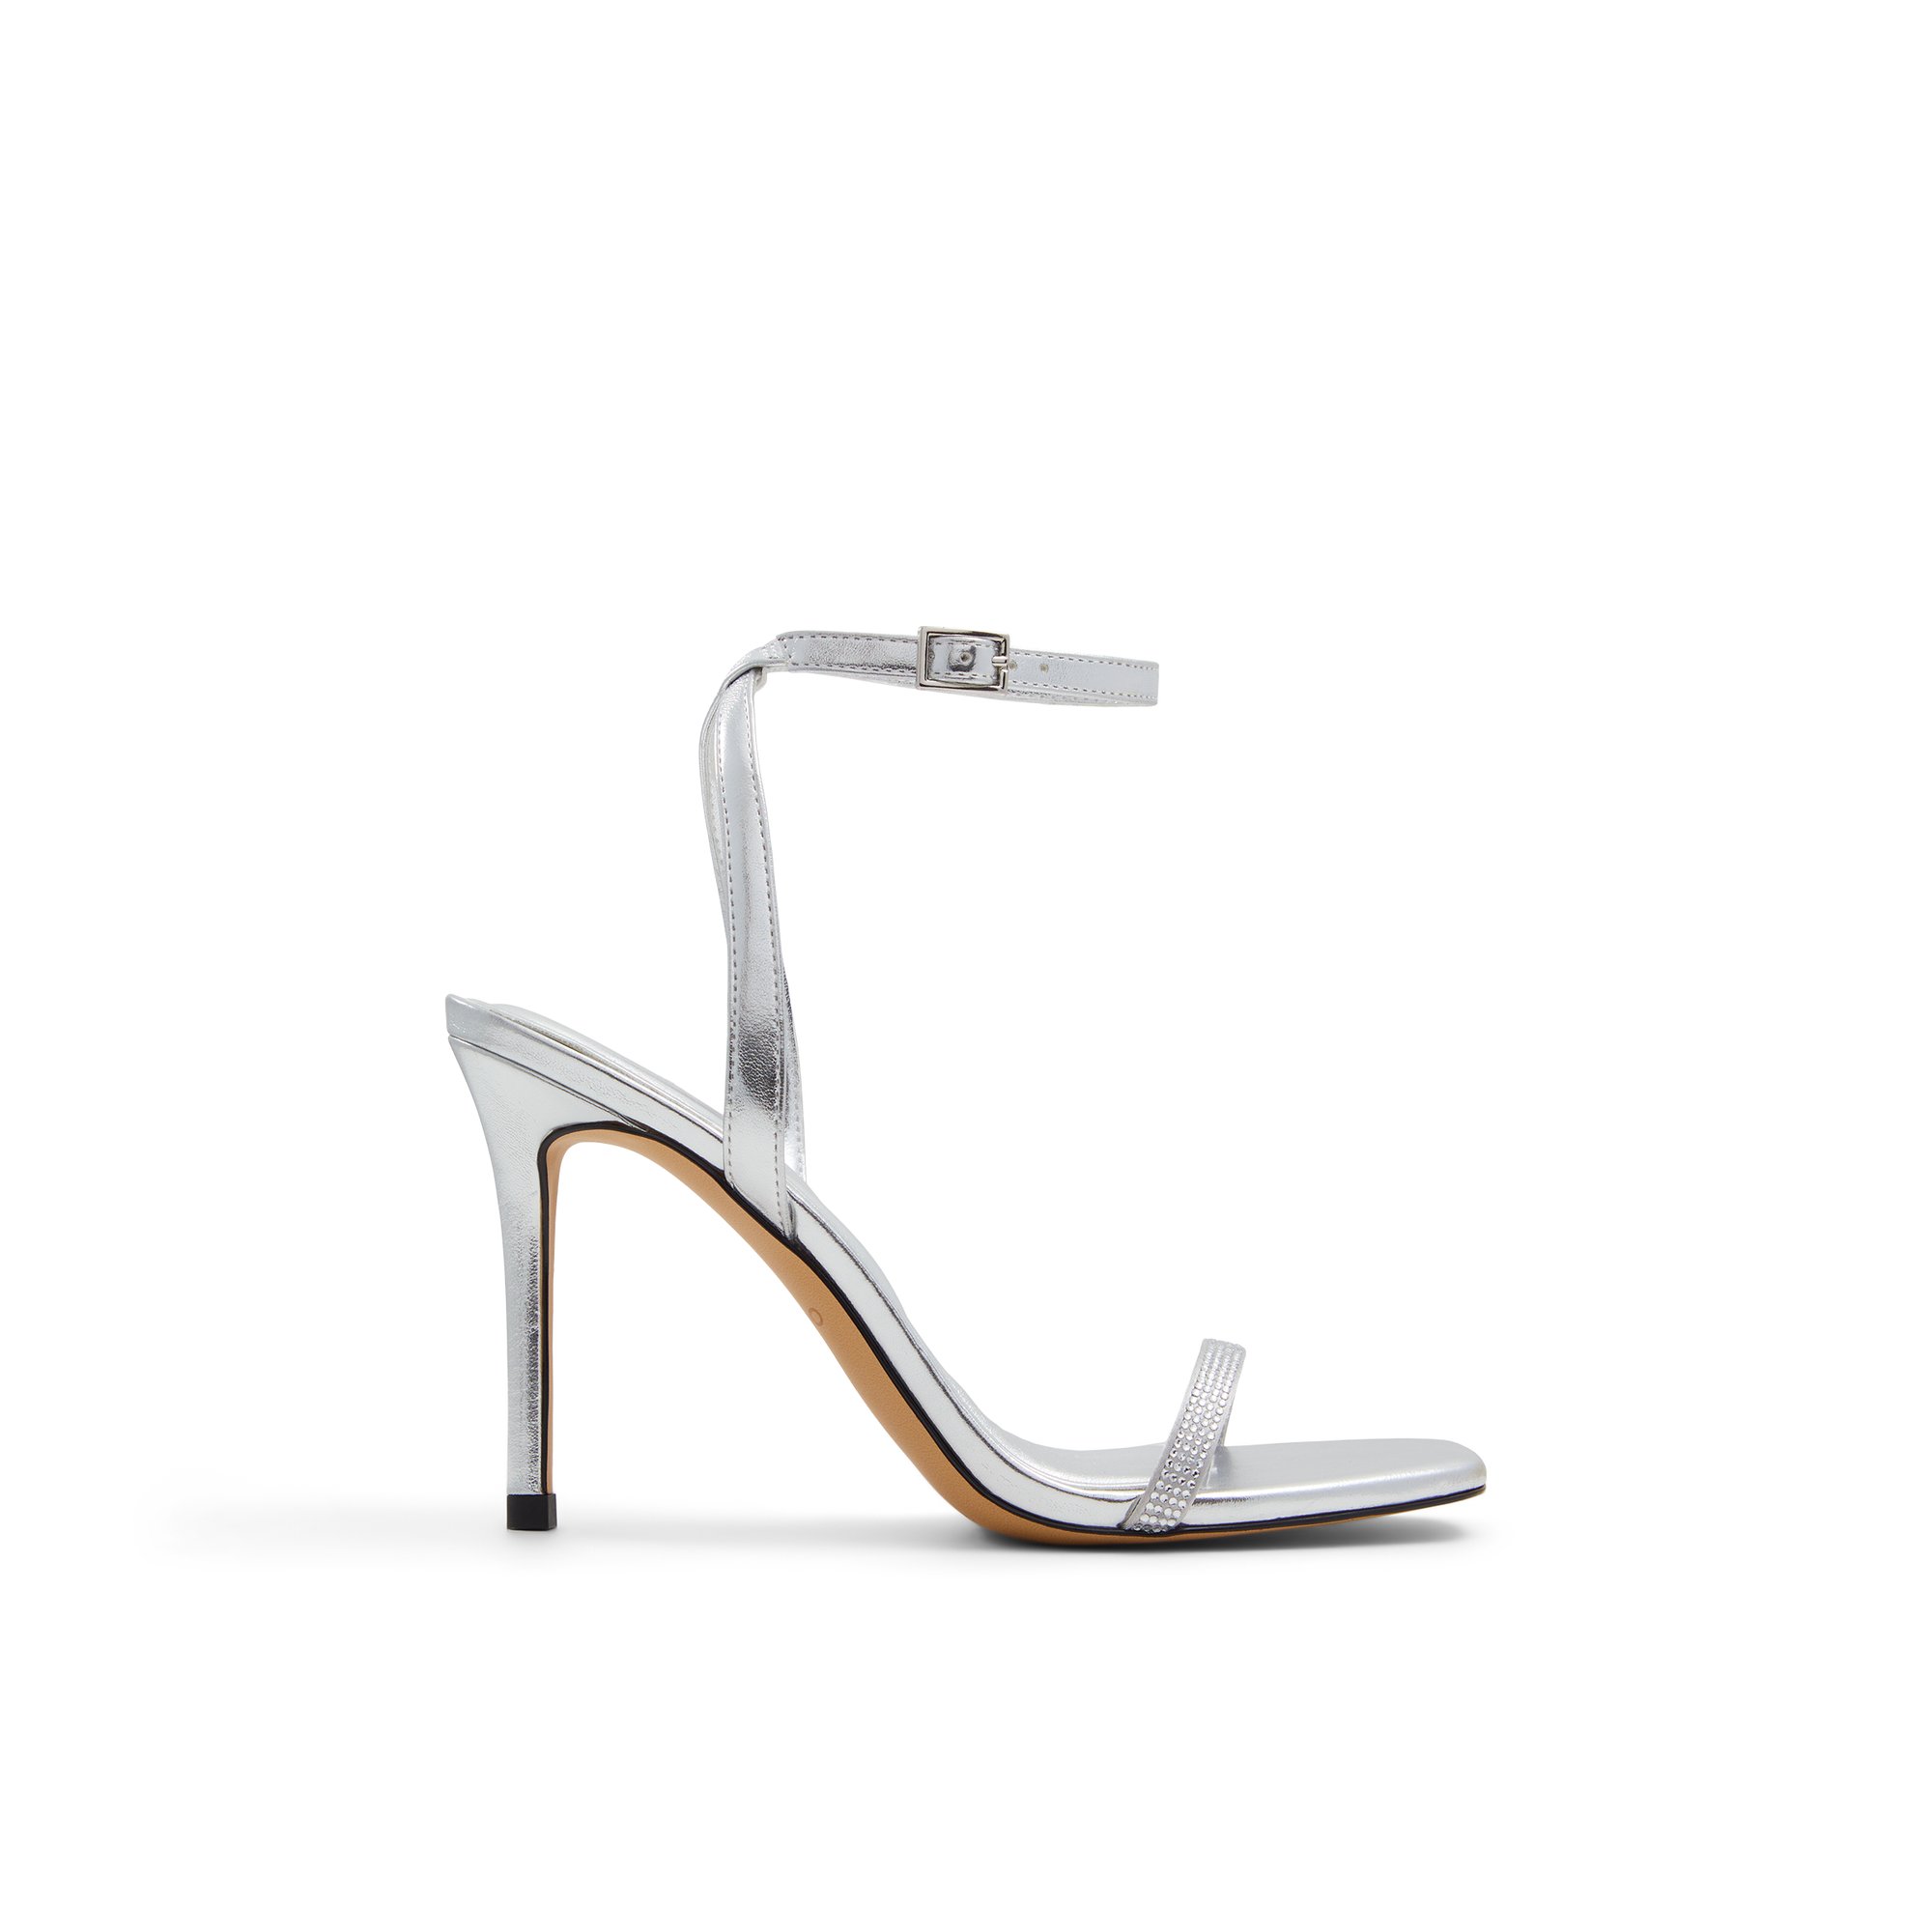 ALDO Maude - Women's Strappy Sandal Sandals - Silver